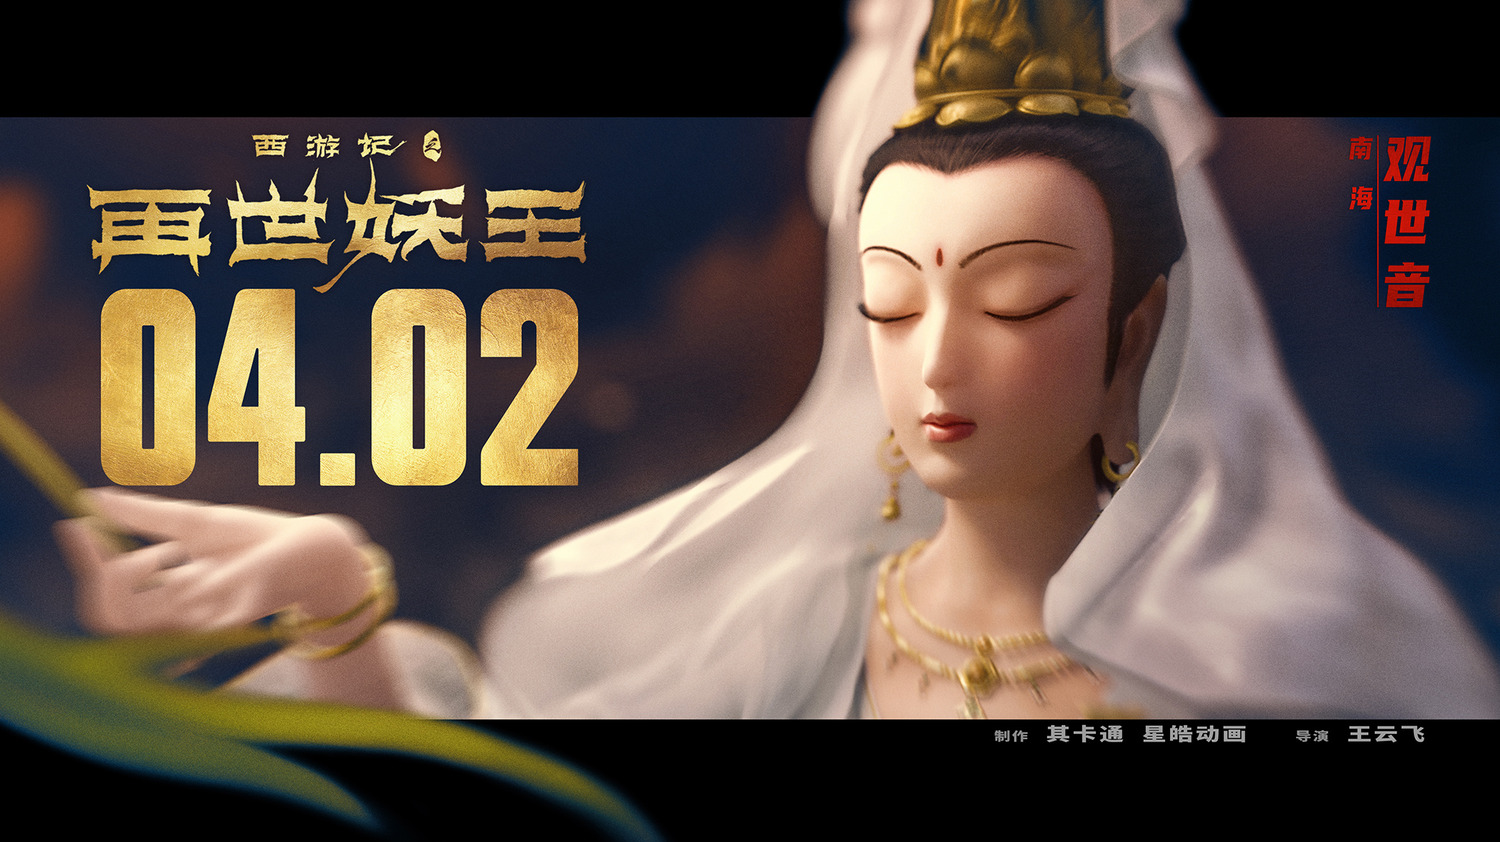 Extra Large Movie Poster Image for Xi You Ji Zhi Zai Shi Yao Wang (#18 of 21)